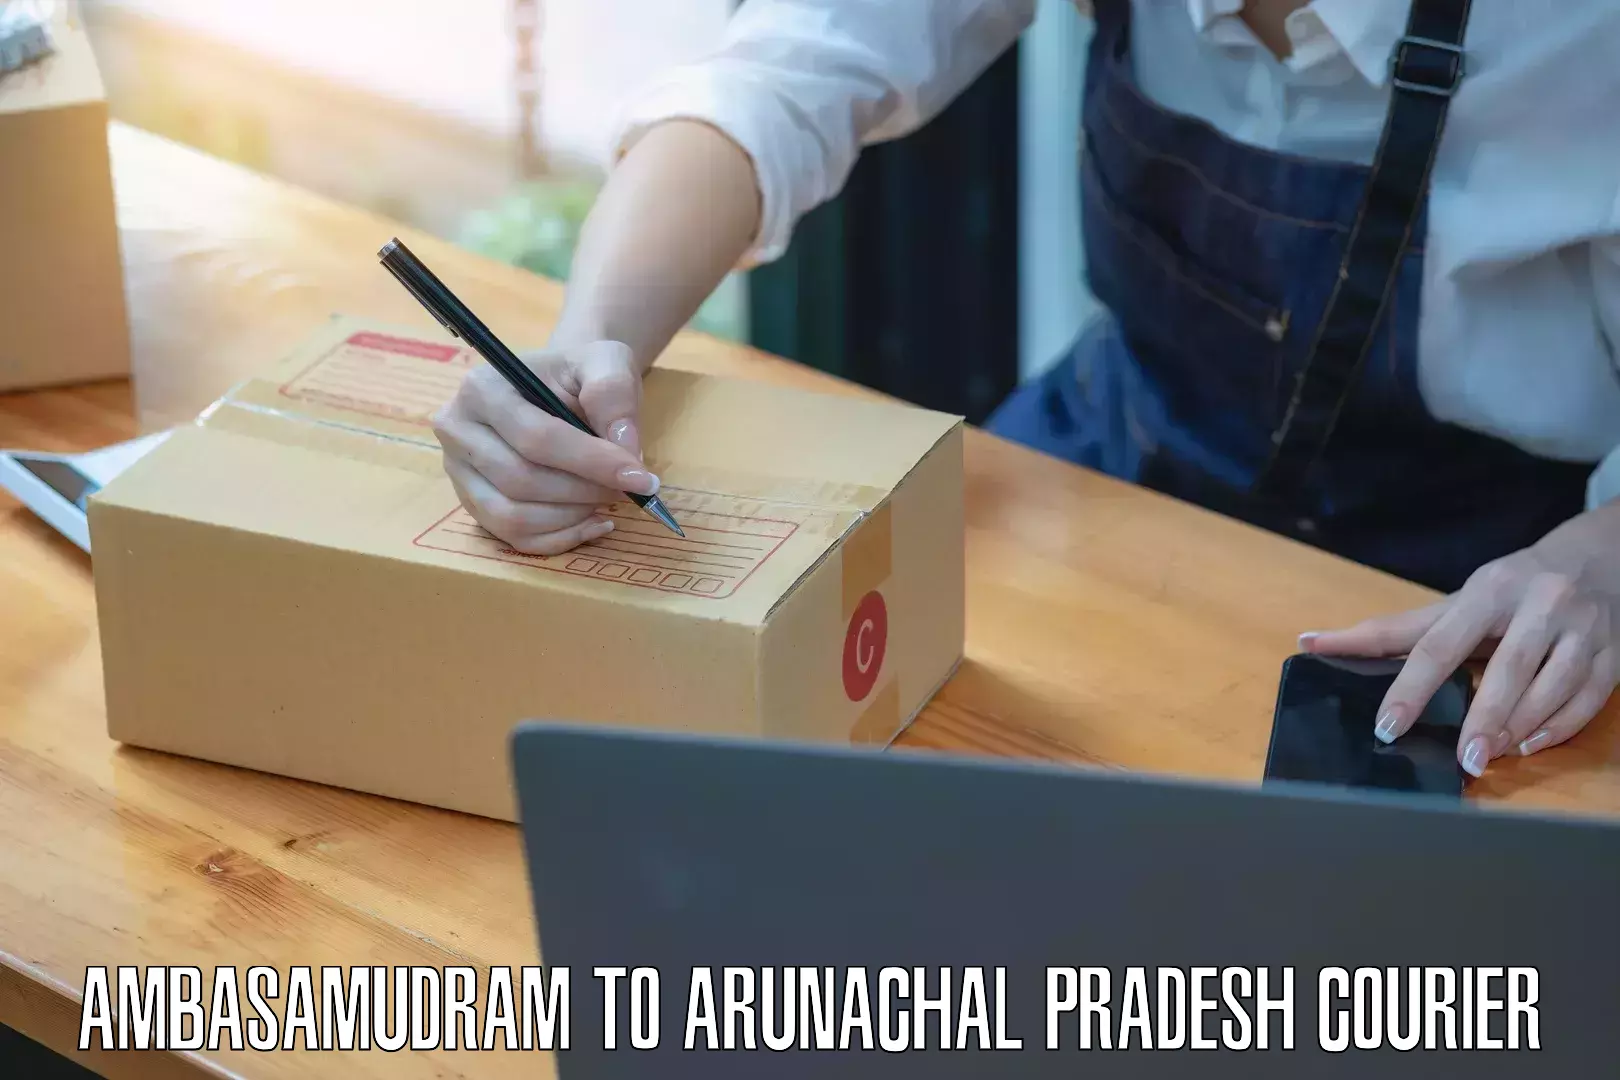 Nationwide parcel services Ambasamudram to Arunachal Pradesh